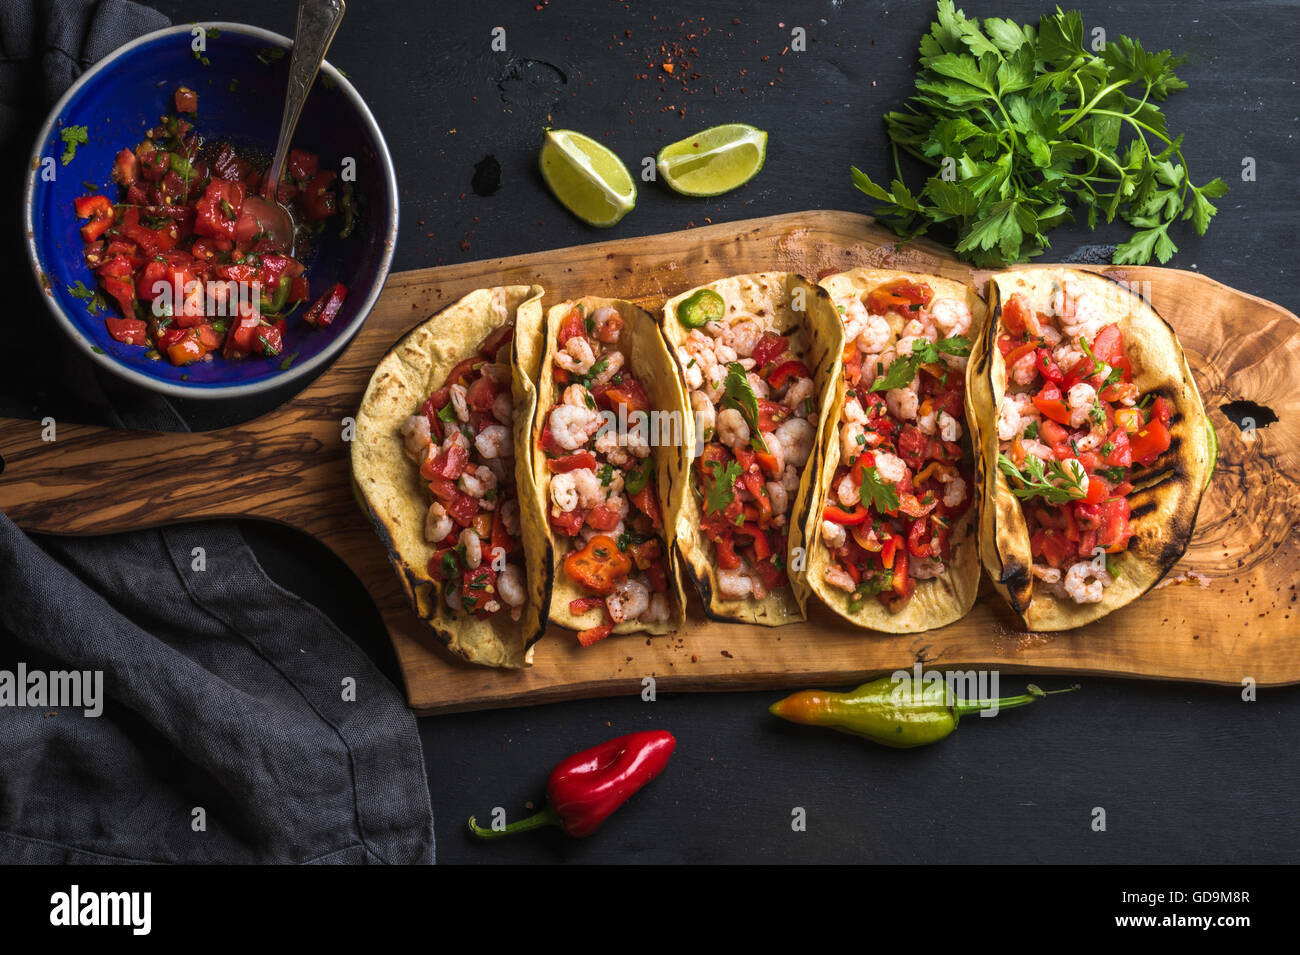 Tacos de crevettes avec sauce salsa maison, limes et le persil sur planche de bois sur fond sombre. Vue d'en haut. La cuisine mexicaine Banque D'Images